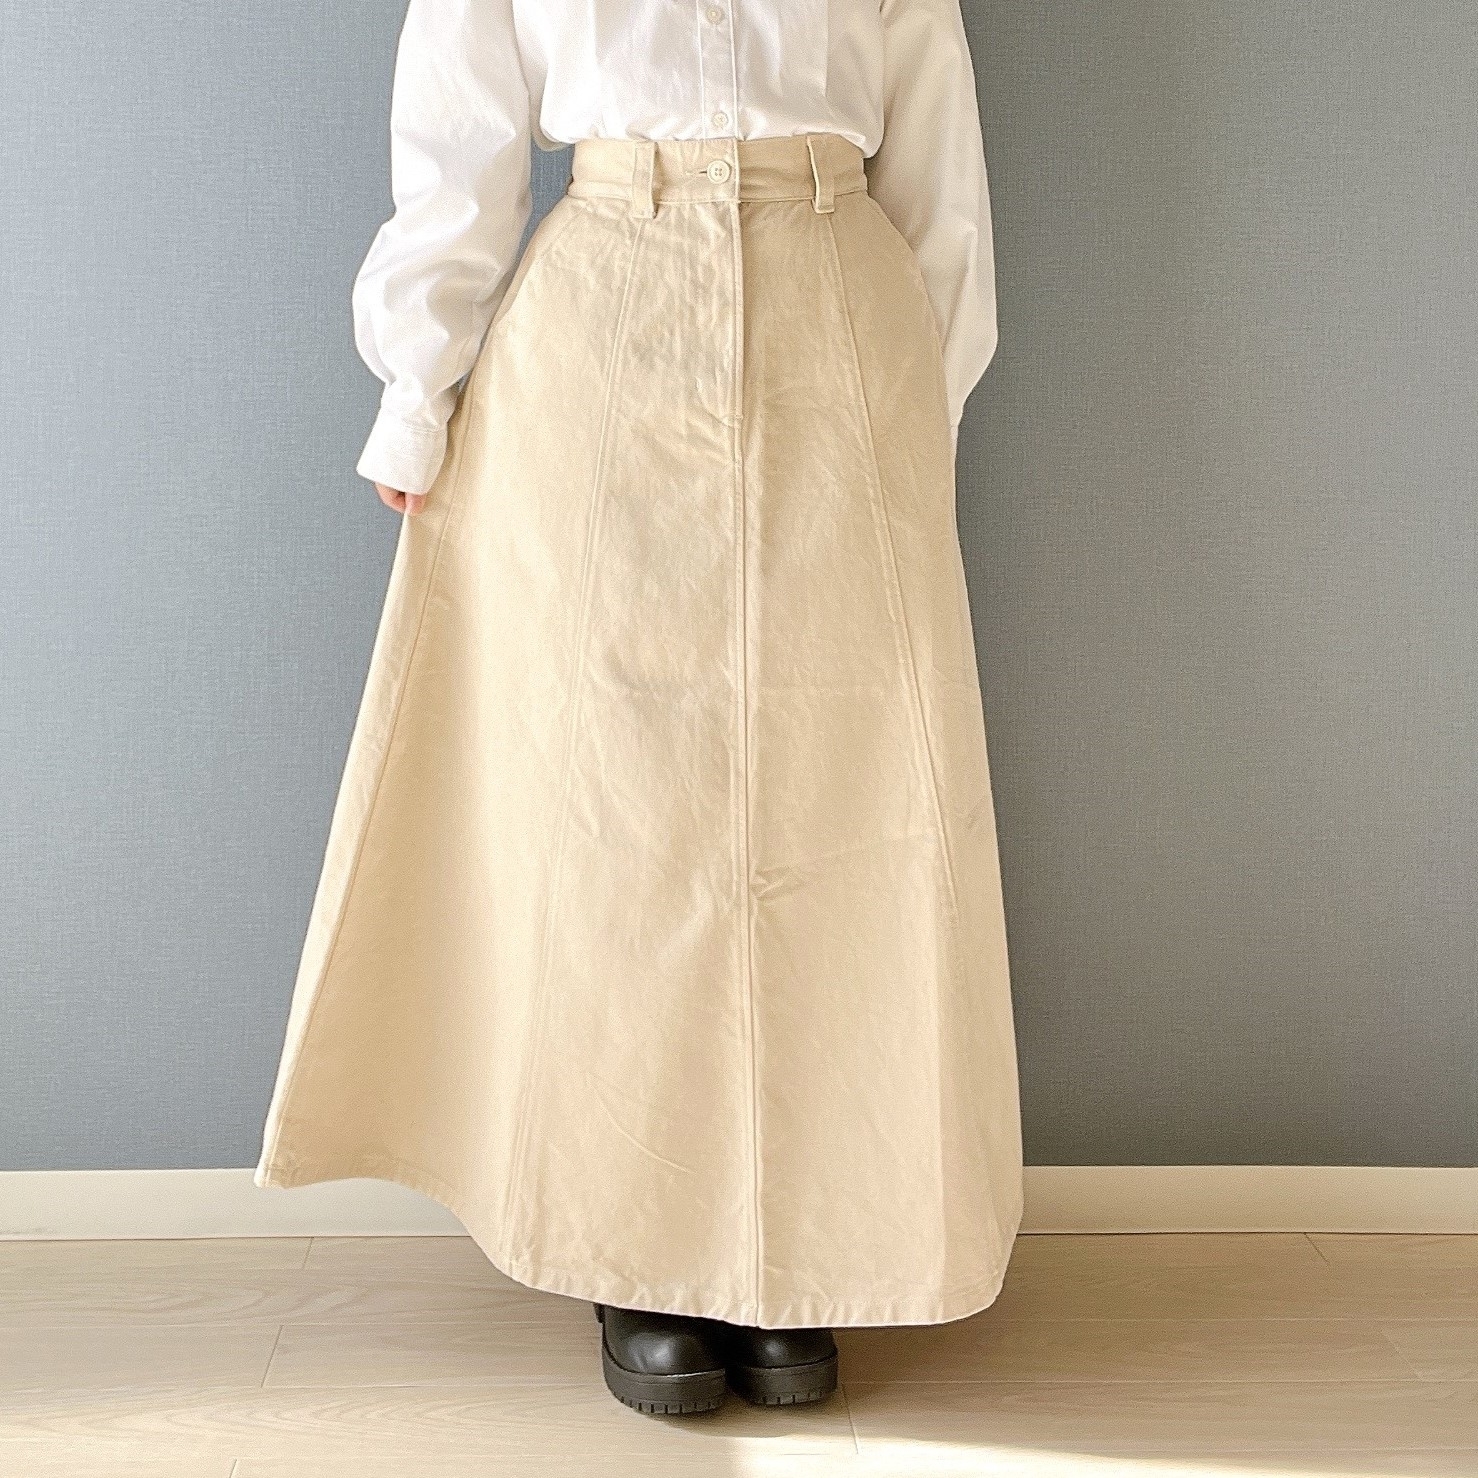 無印良品のオススメのスカート「婦人 木の実から作ったカポック混フレアスカート」